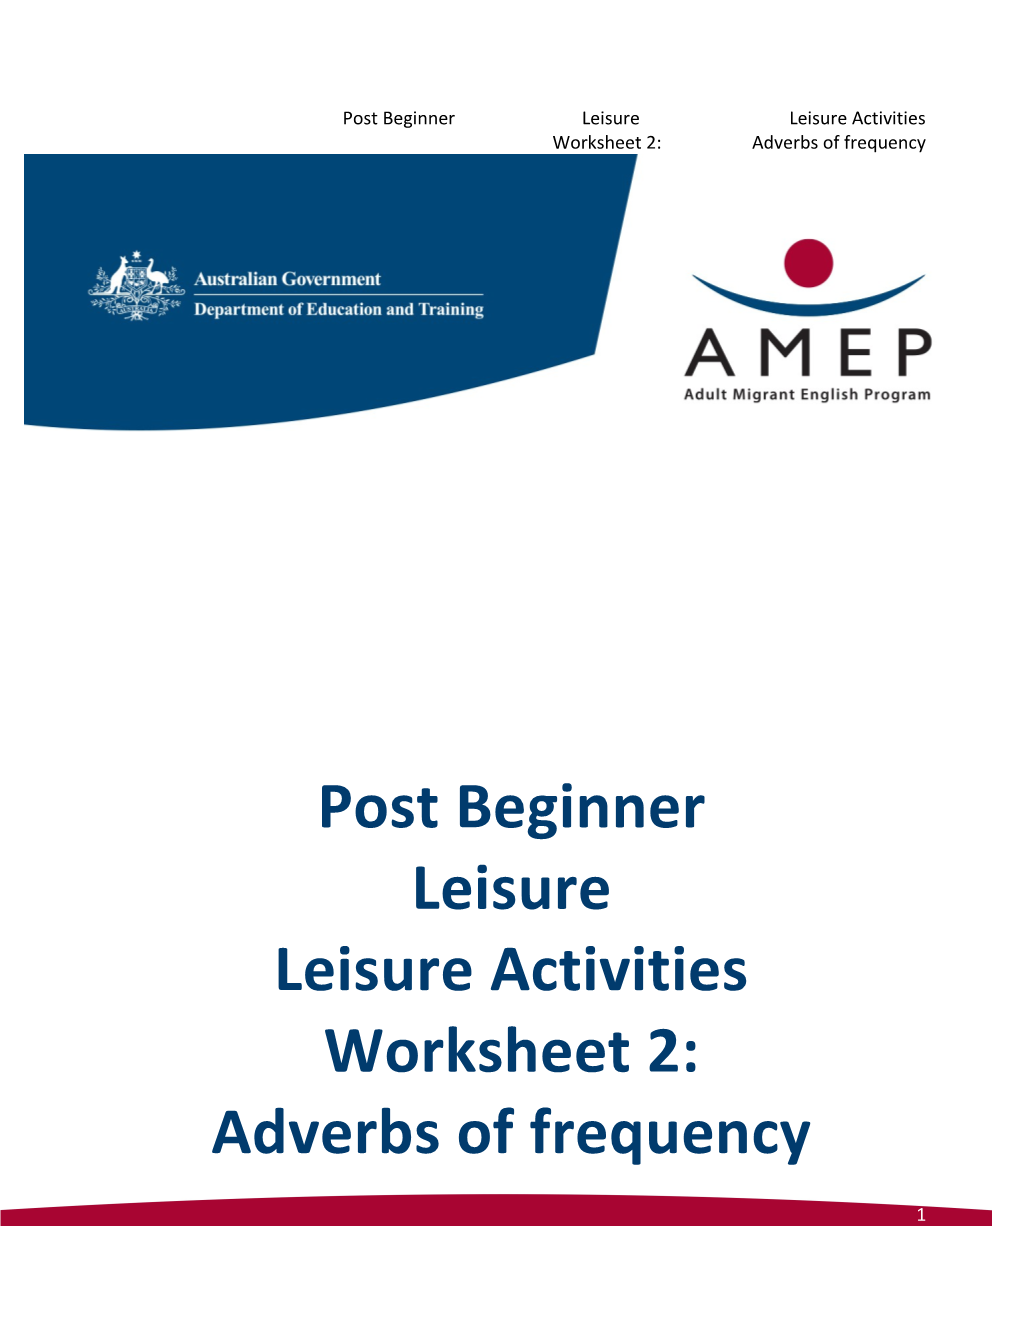 Post Beginner Leisure Leisure Activities Worksheet 2: Adverbs of Frequency